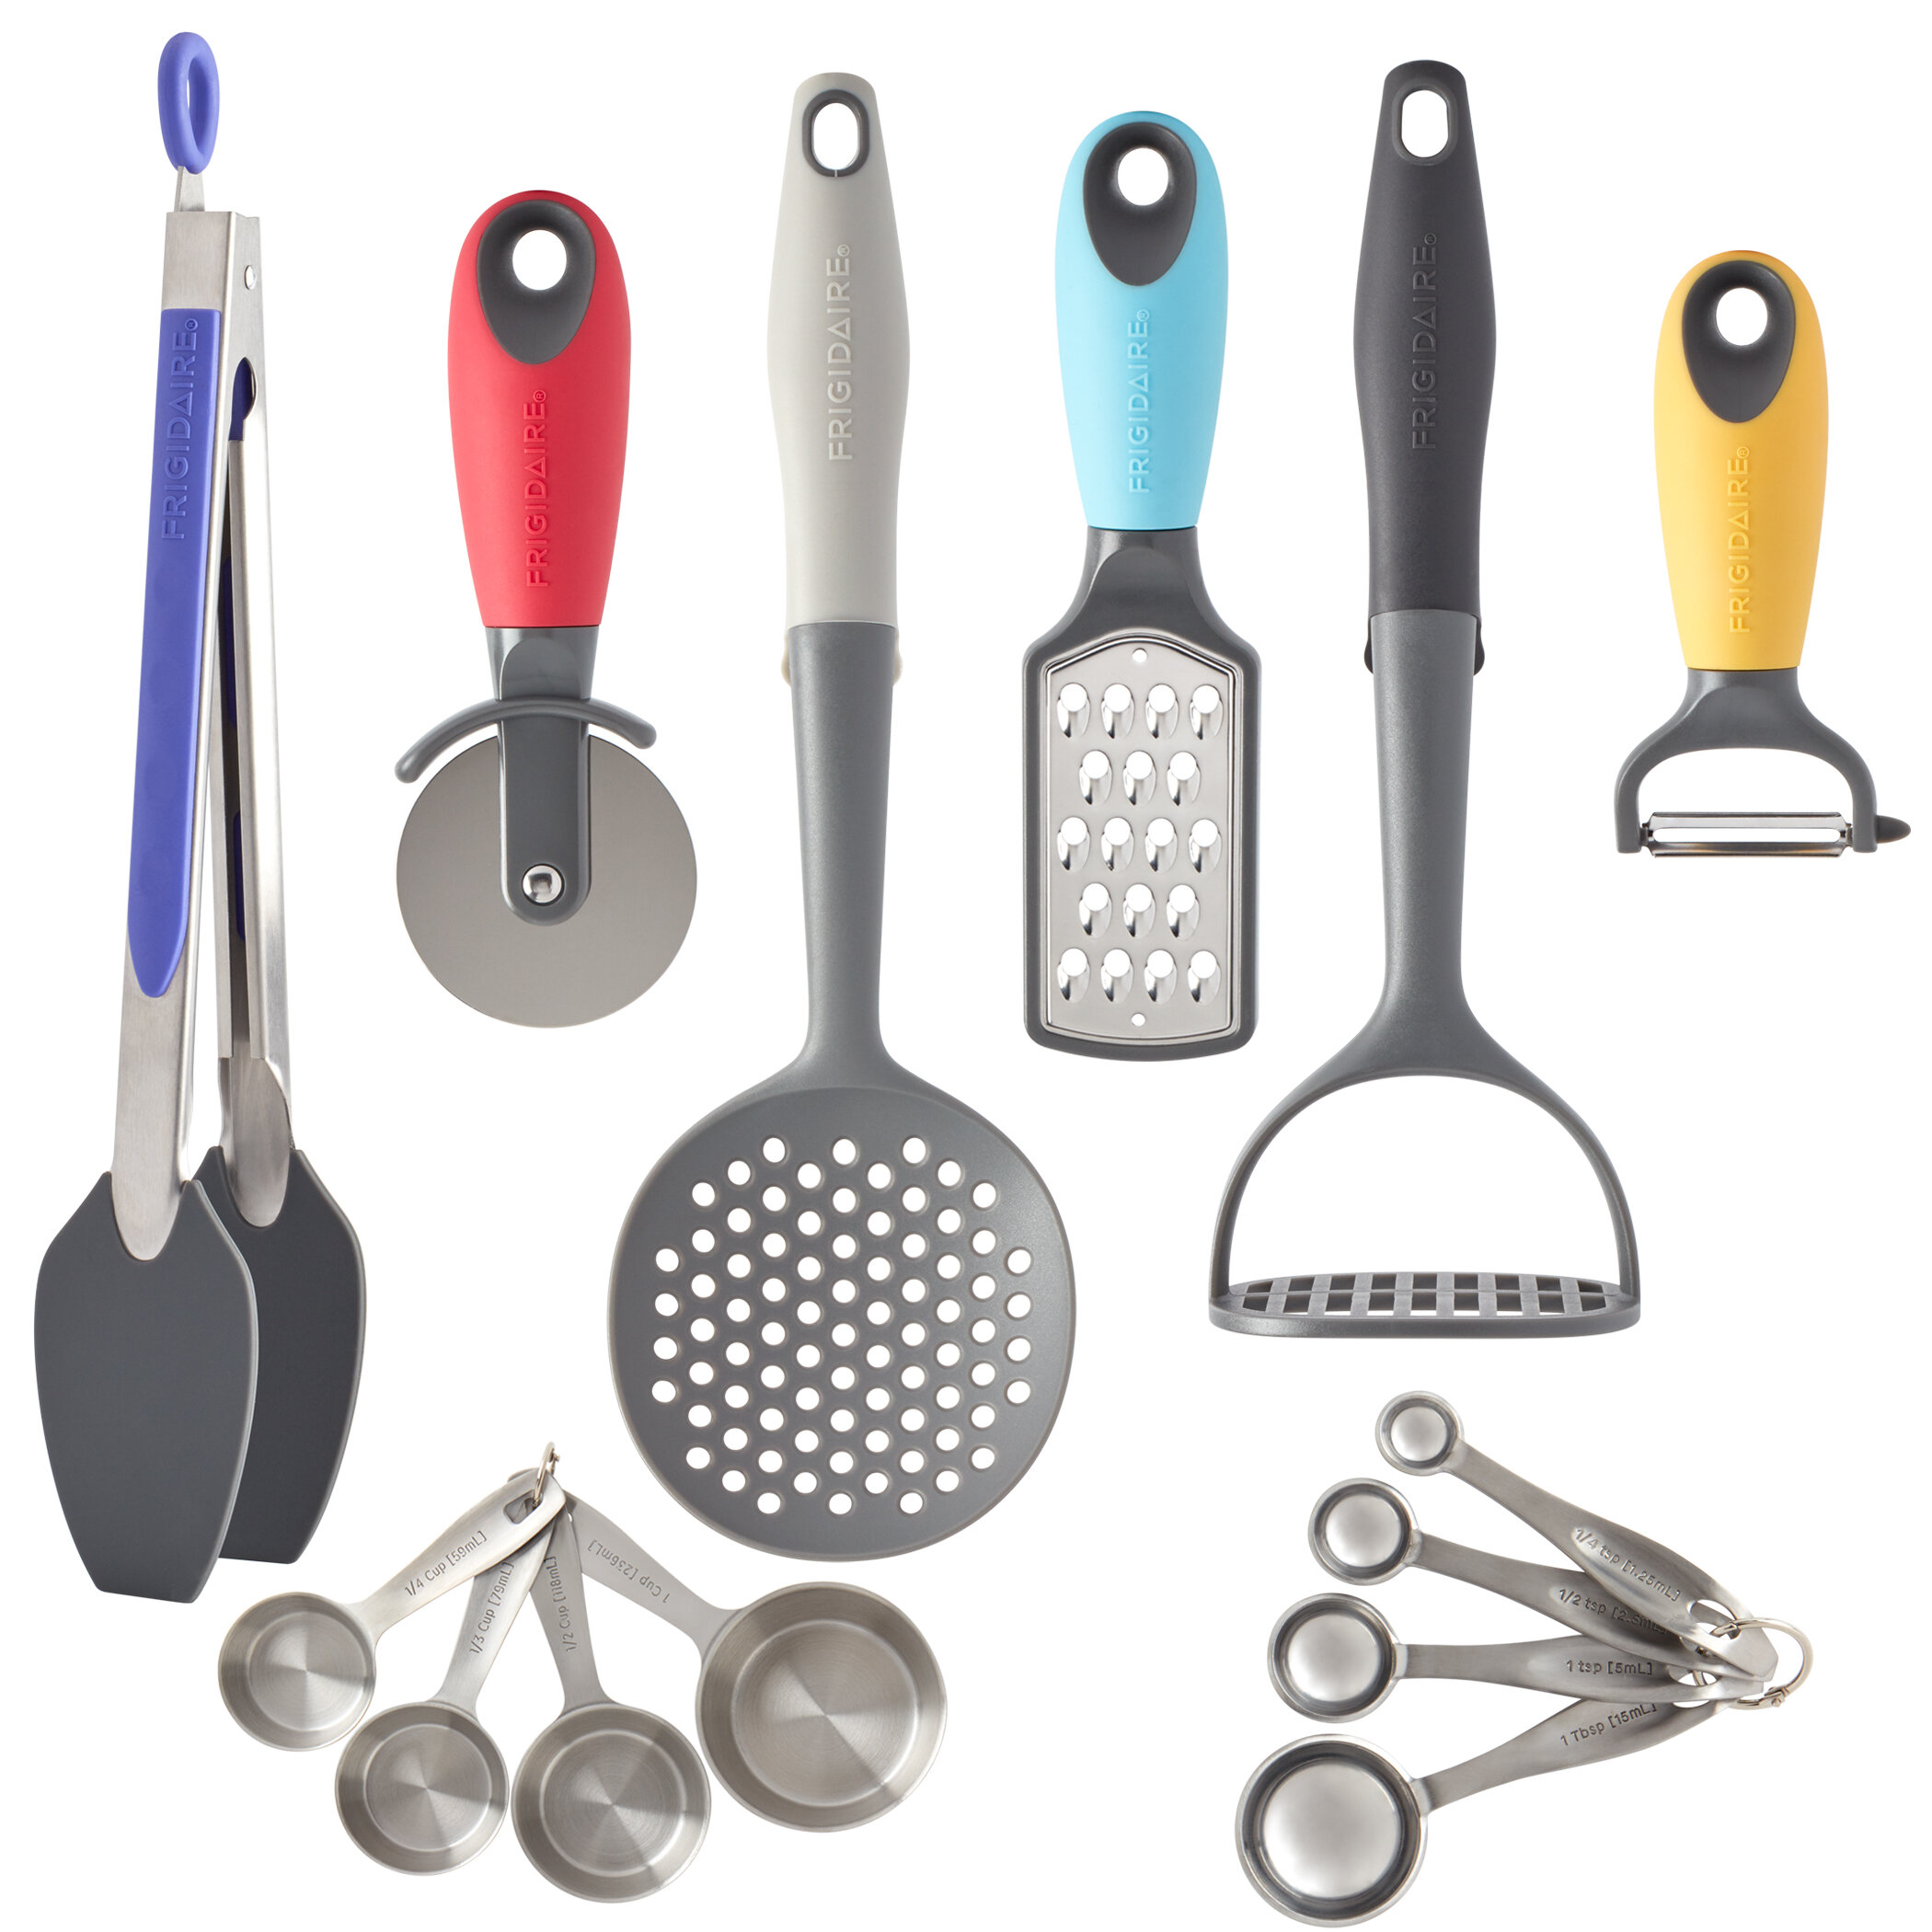 https://assets.wfcdn.com/im/99921901/compr-r85/1323/132348851/frigidaire-cookware-14-piece-kitchen-gadget-set.jpg